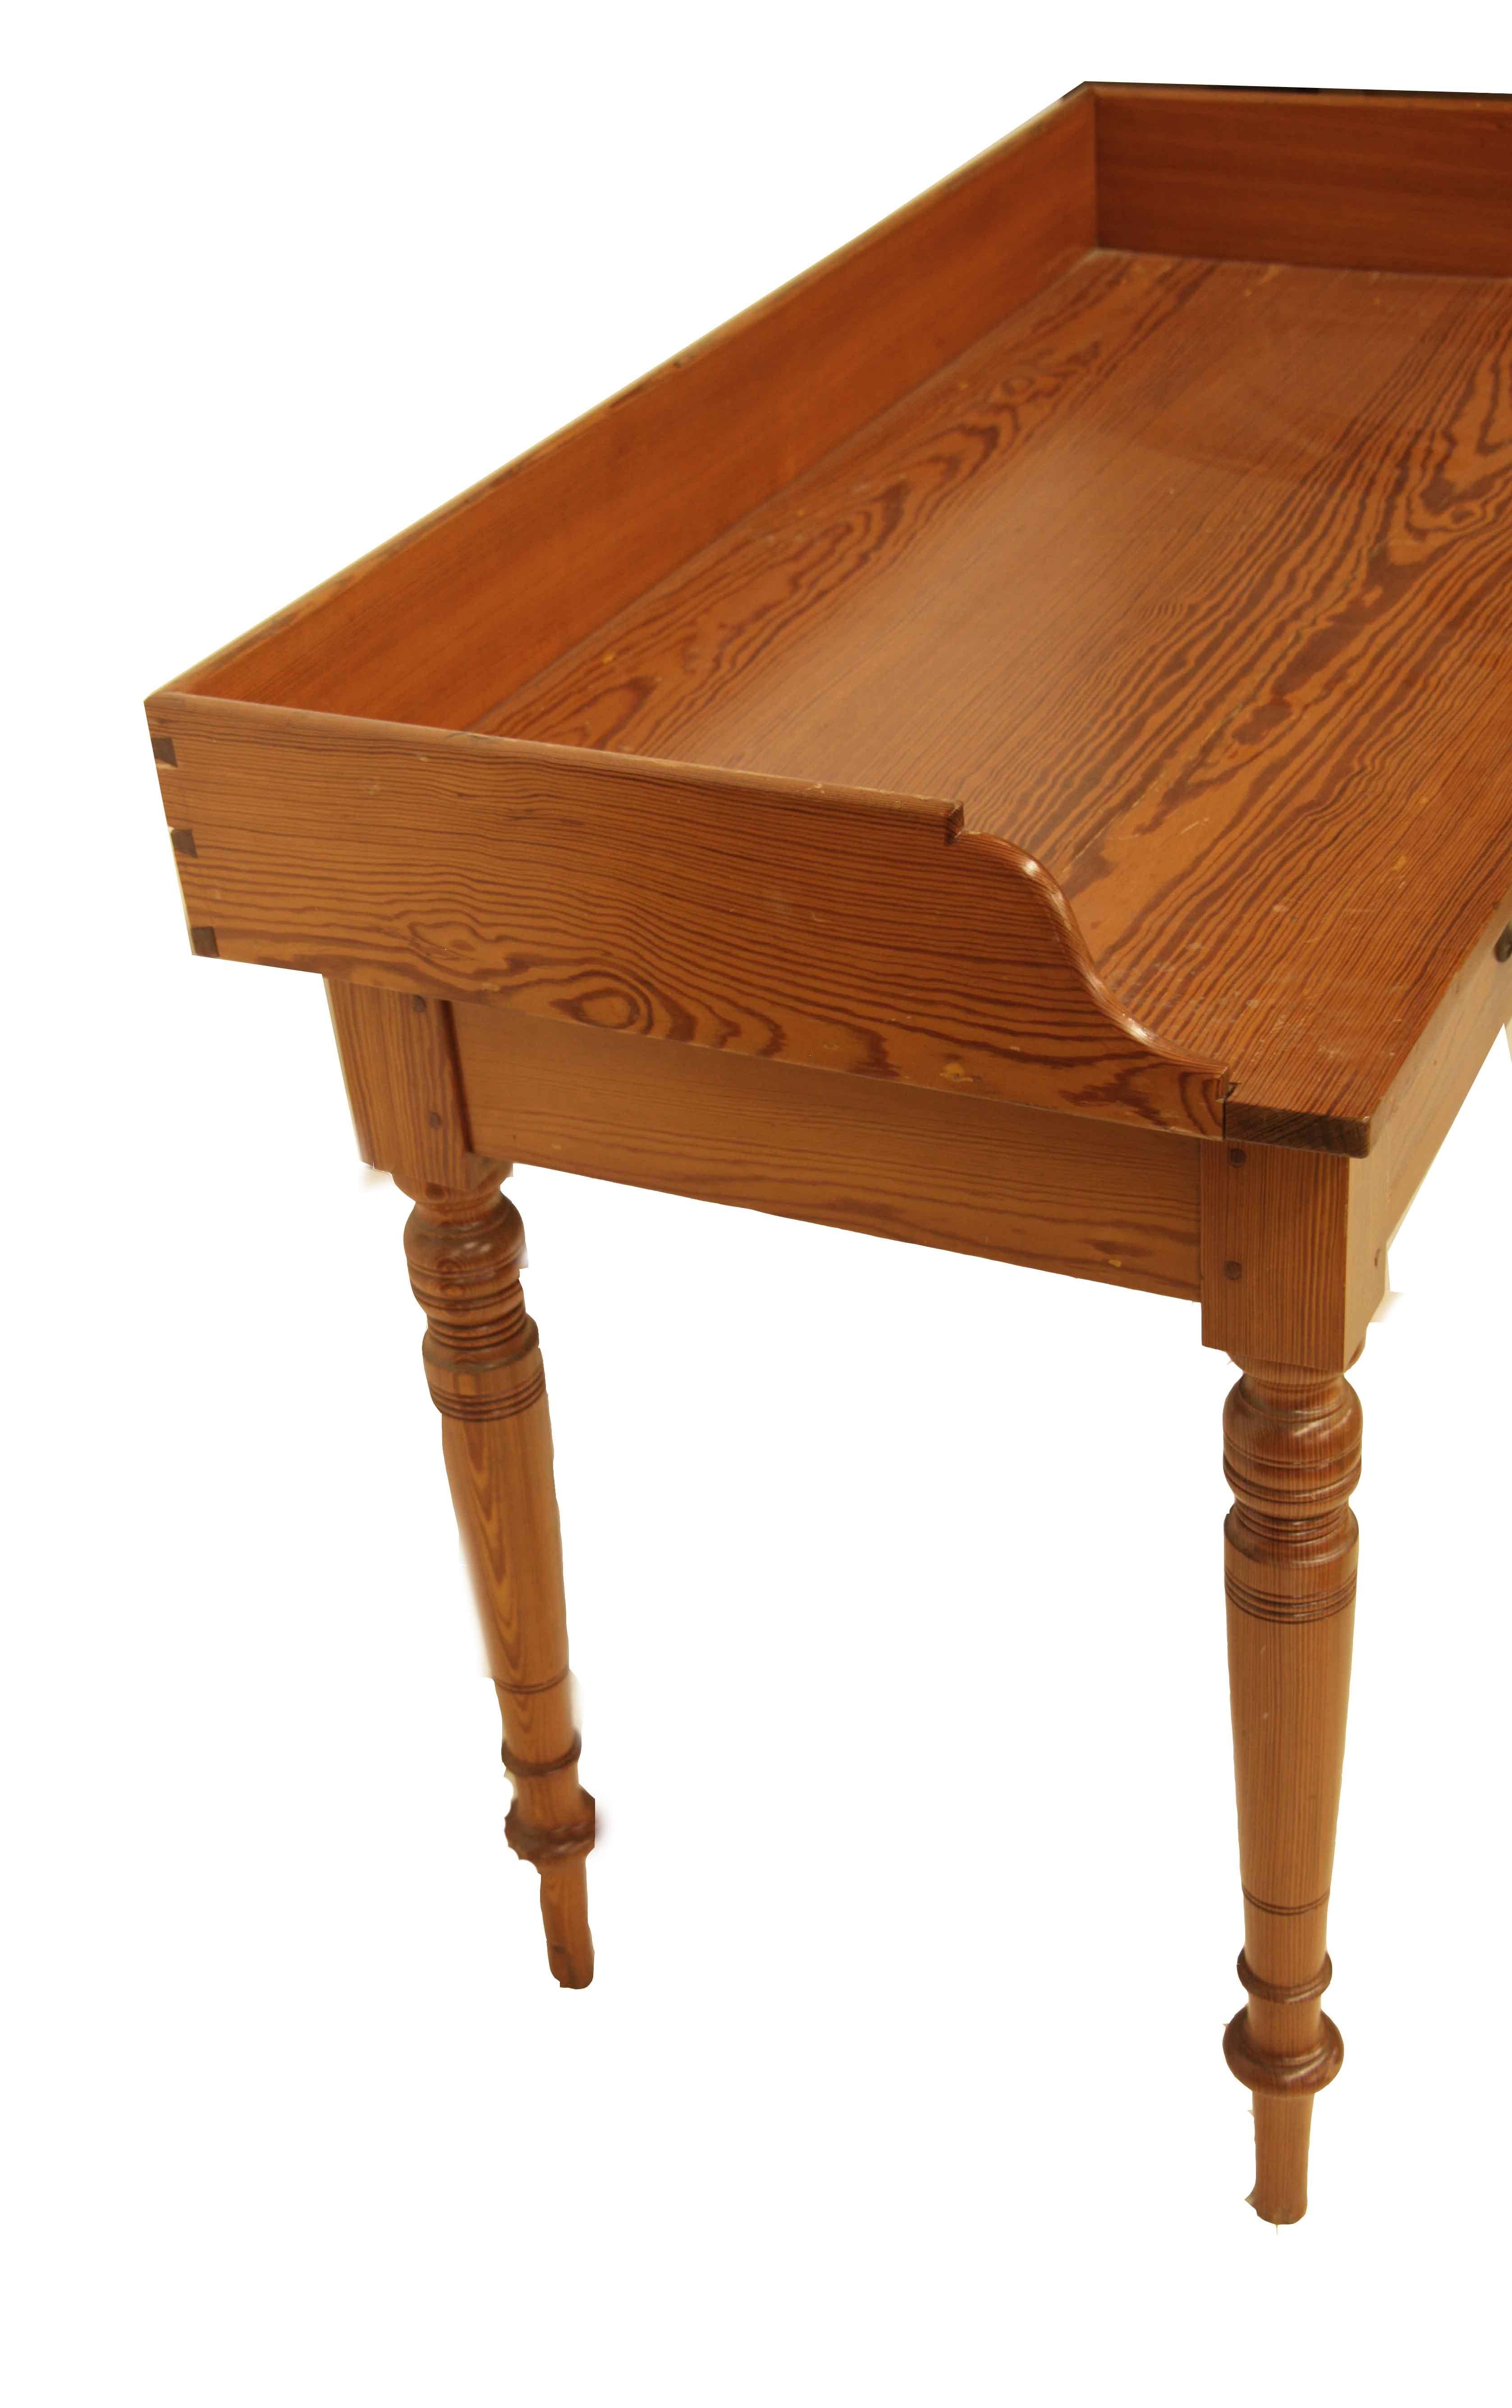 Englischer Kiefernholztisch mit zwei Schubladen... in England nennt man das ''pitch pine'', hier nennen wir es ''heart pine'',  Egal wie man es nennt, es ist ein schönes Holz mit kräftiger Farbe und Maserung.  Die Platte ist an den Seiten und auf